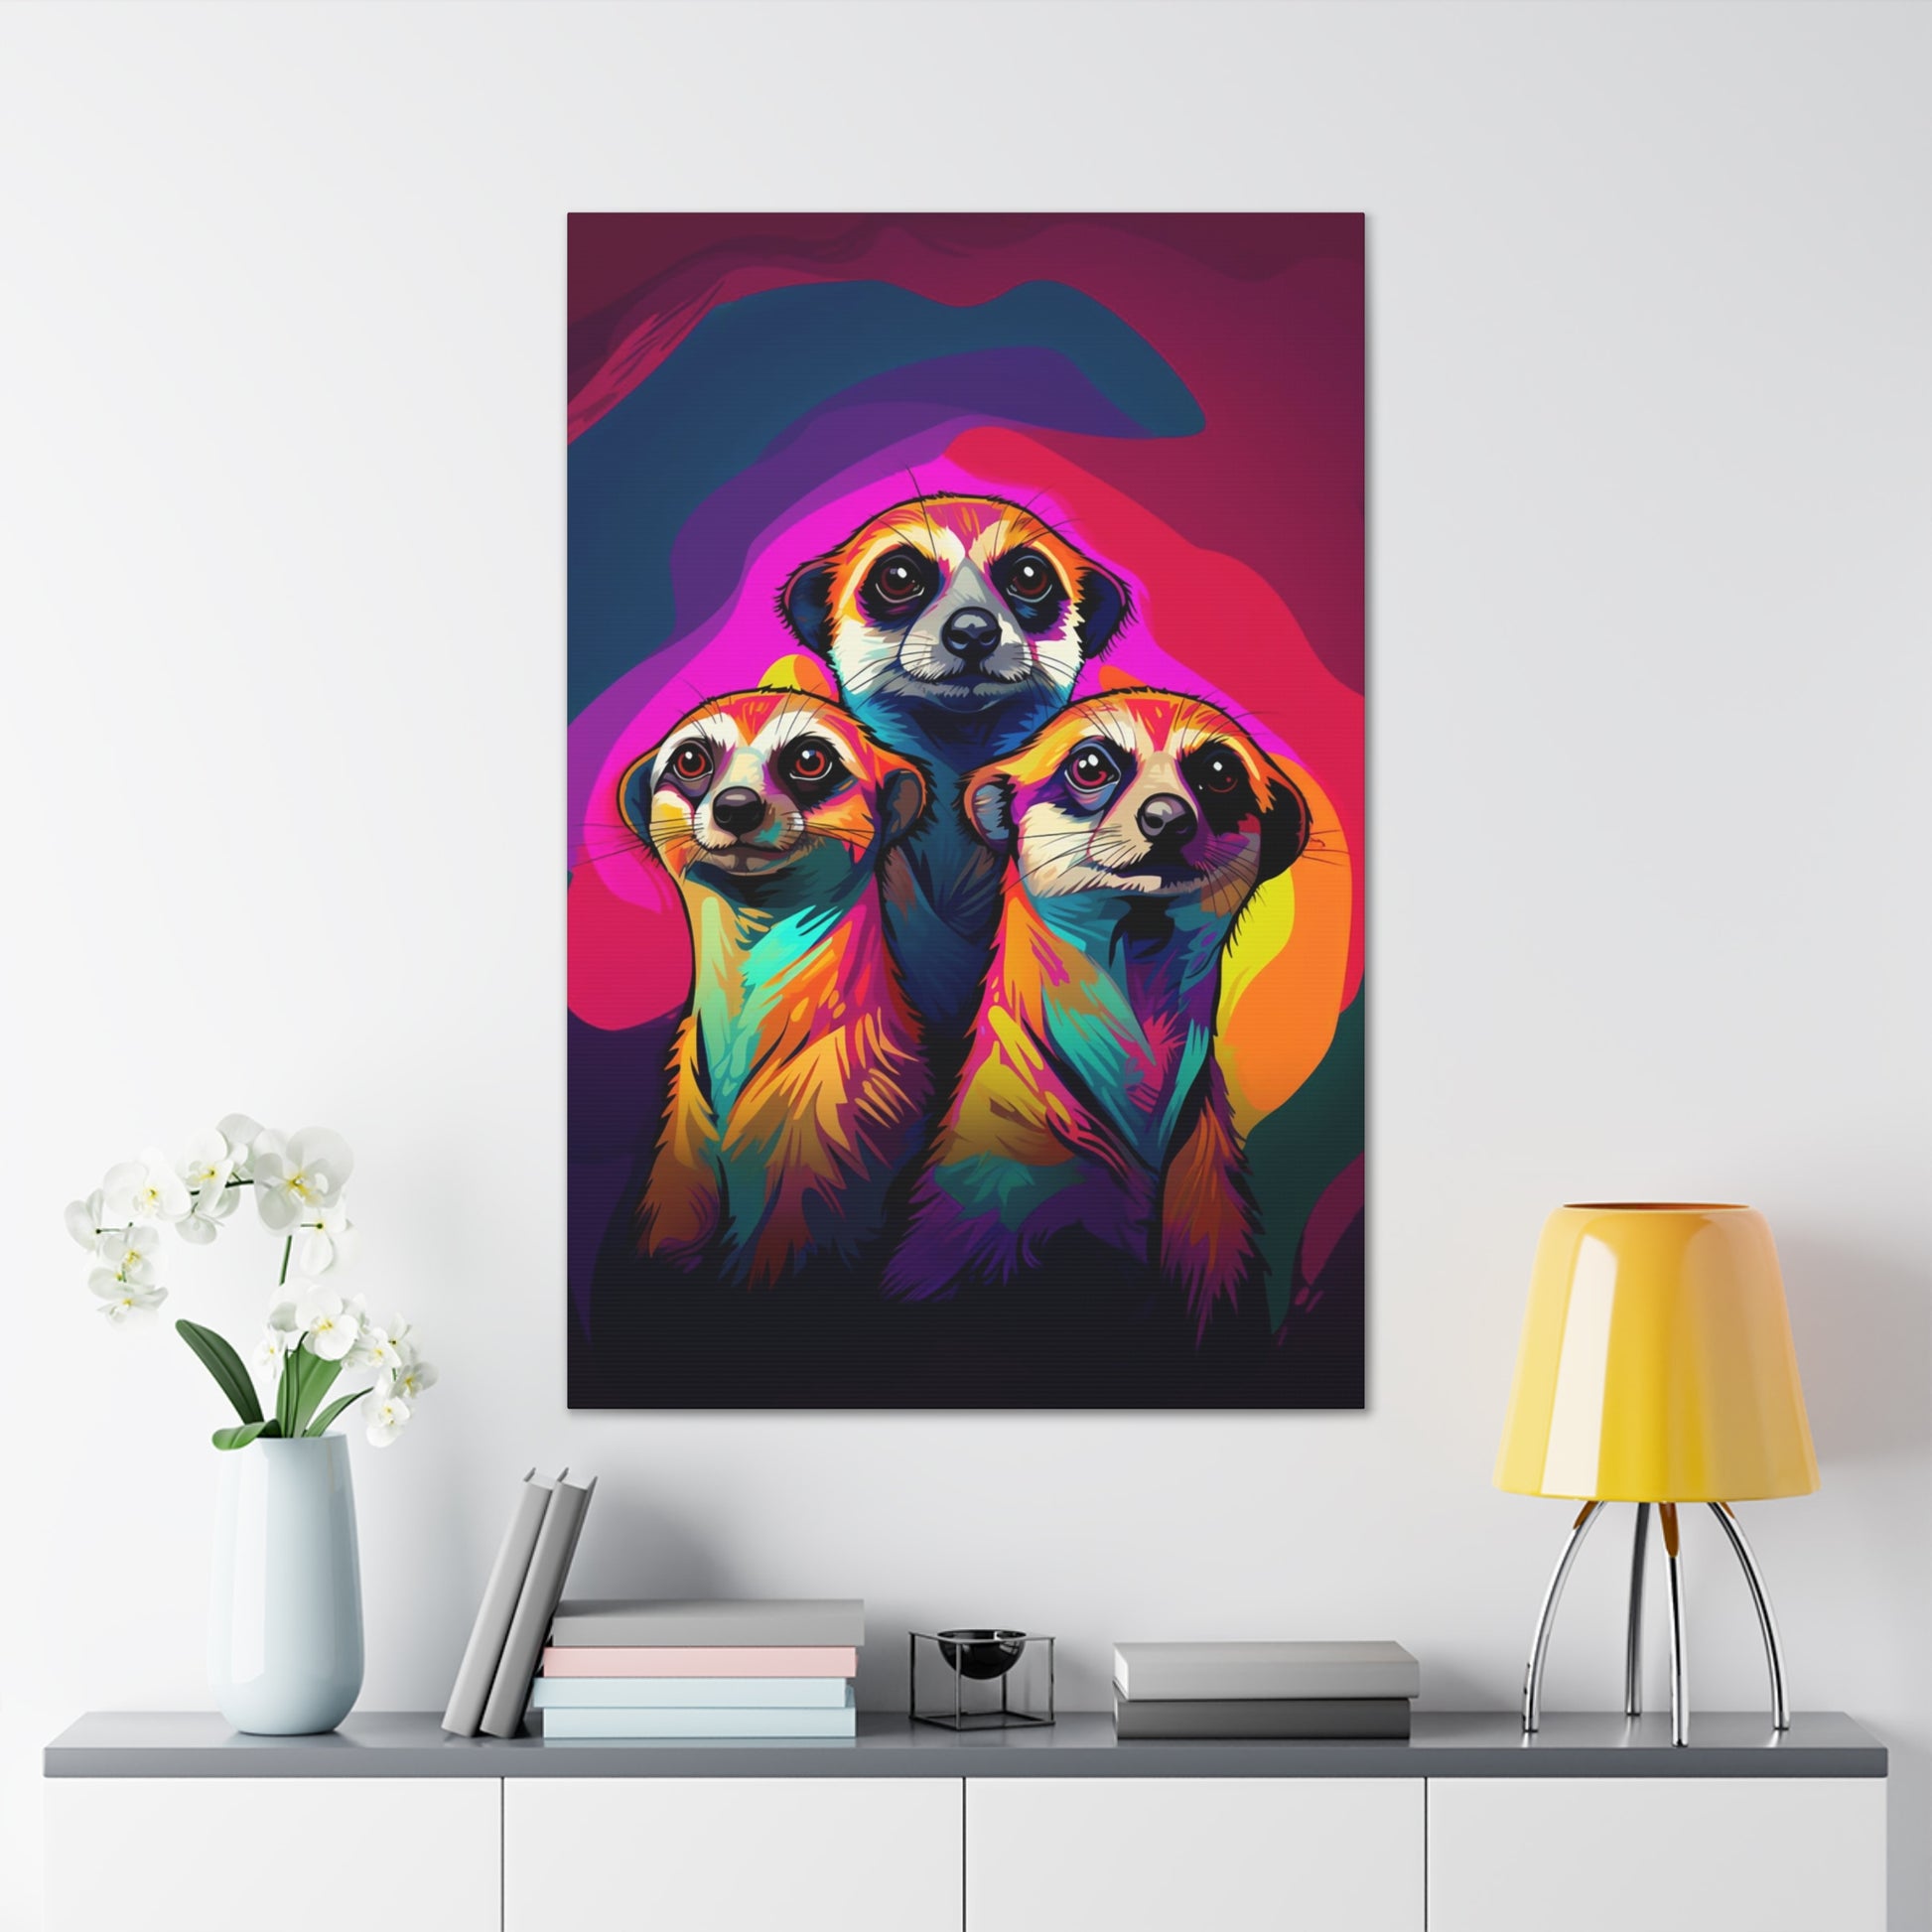 Meerkats stretched canvas print